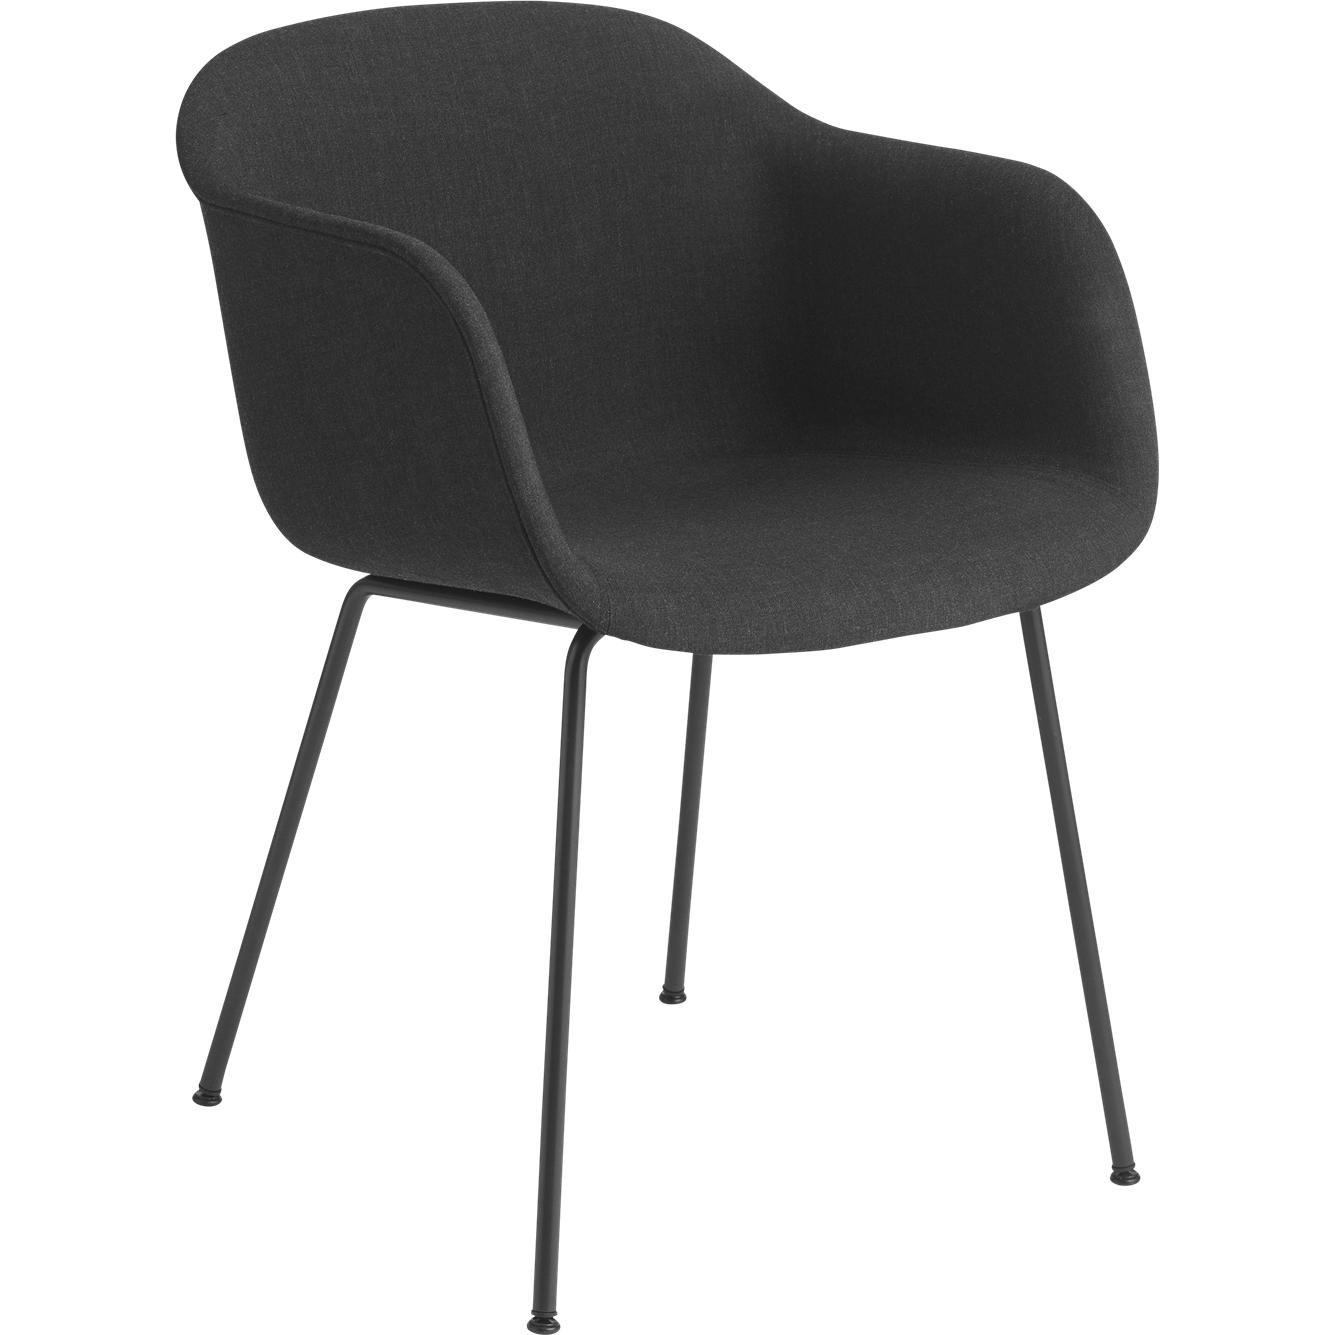 Muuto Fiber fauteuilbuisbasis, stoffen stoel, zwart